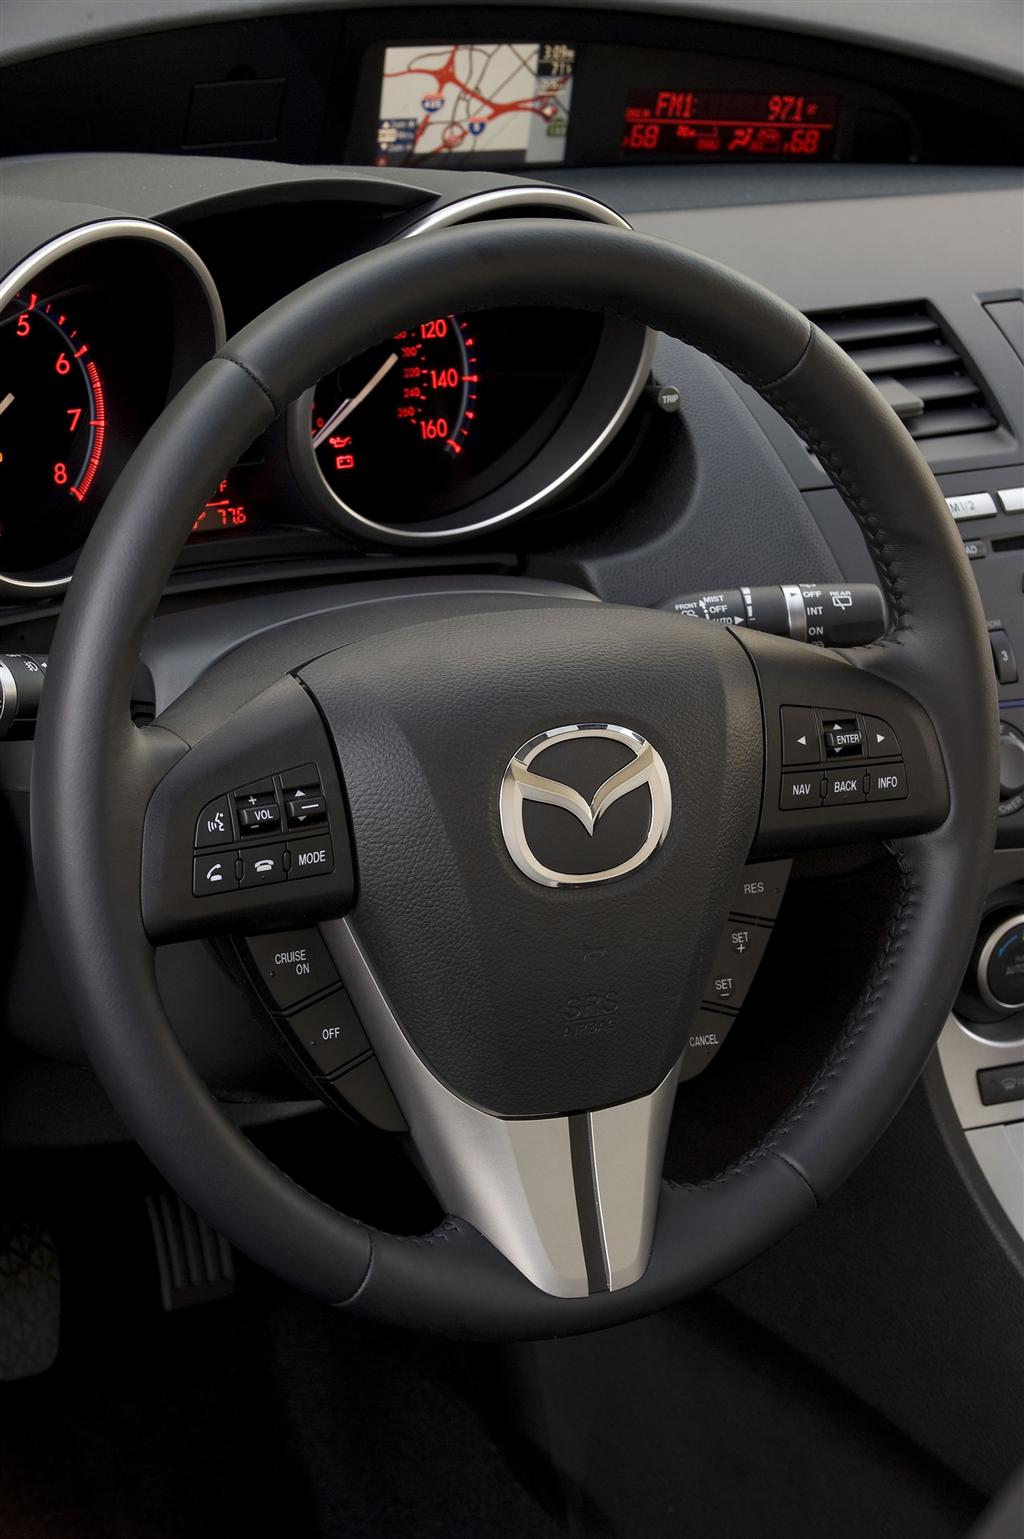 2011 Mazda 3 News and Information - conceptcarz.com